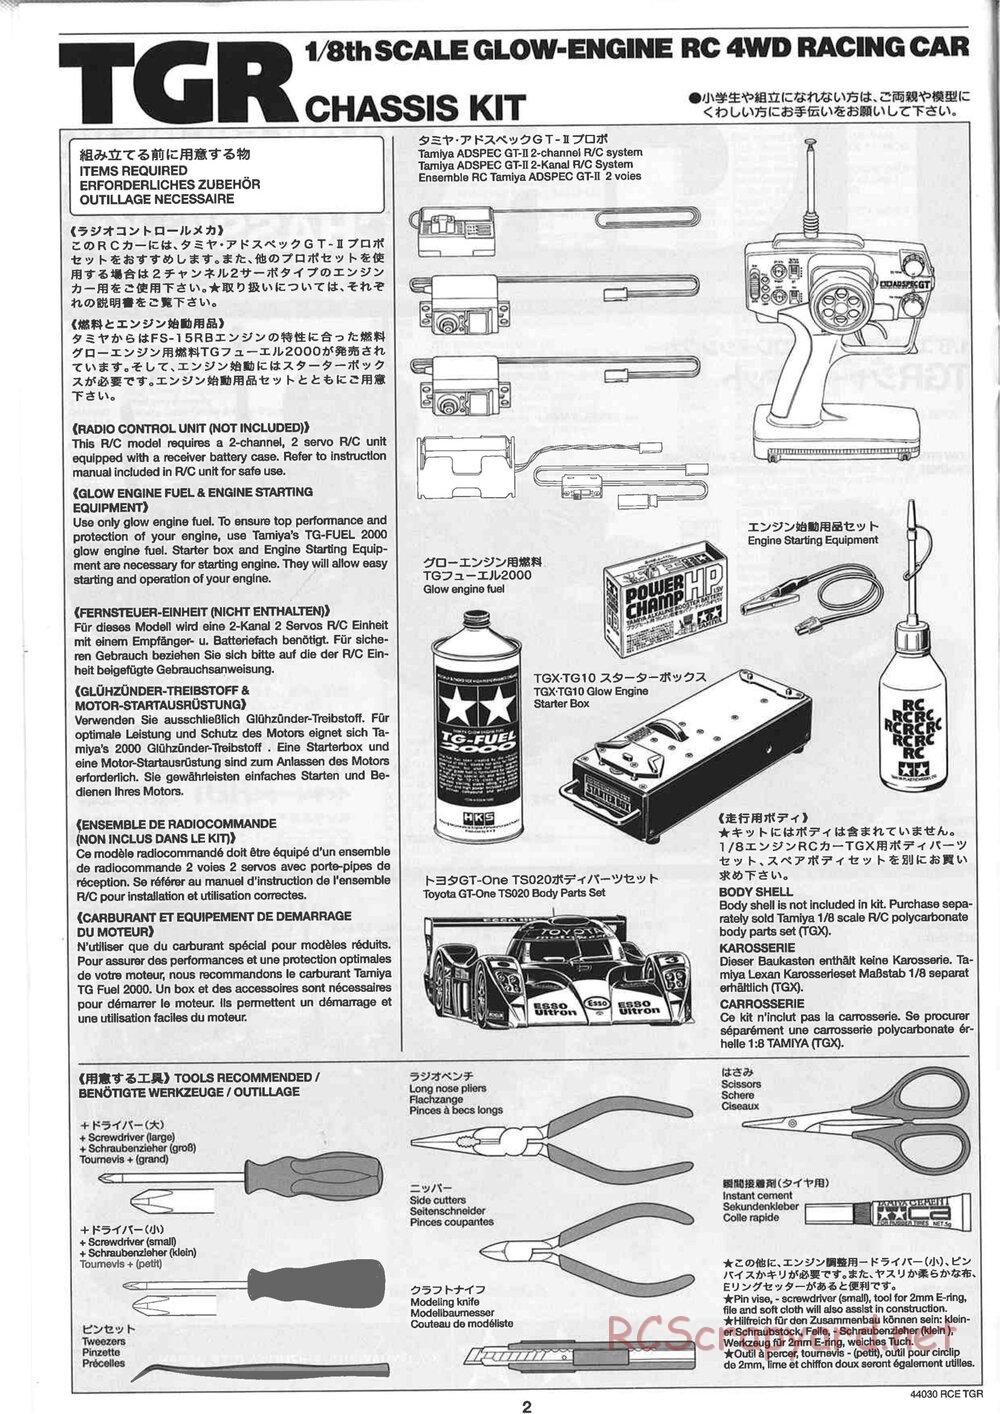 Tamiya - TGR Chassis - Manual - Page 2